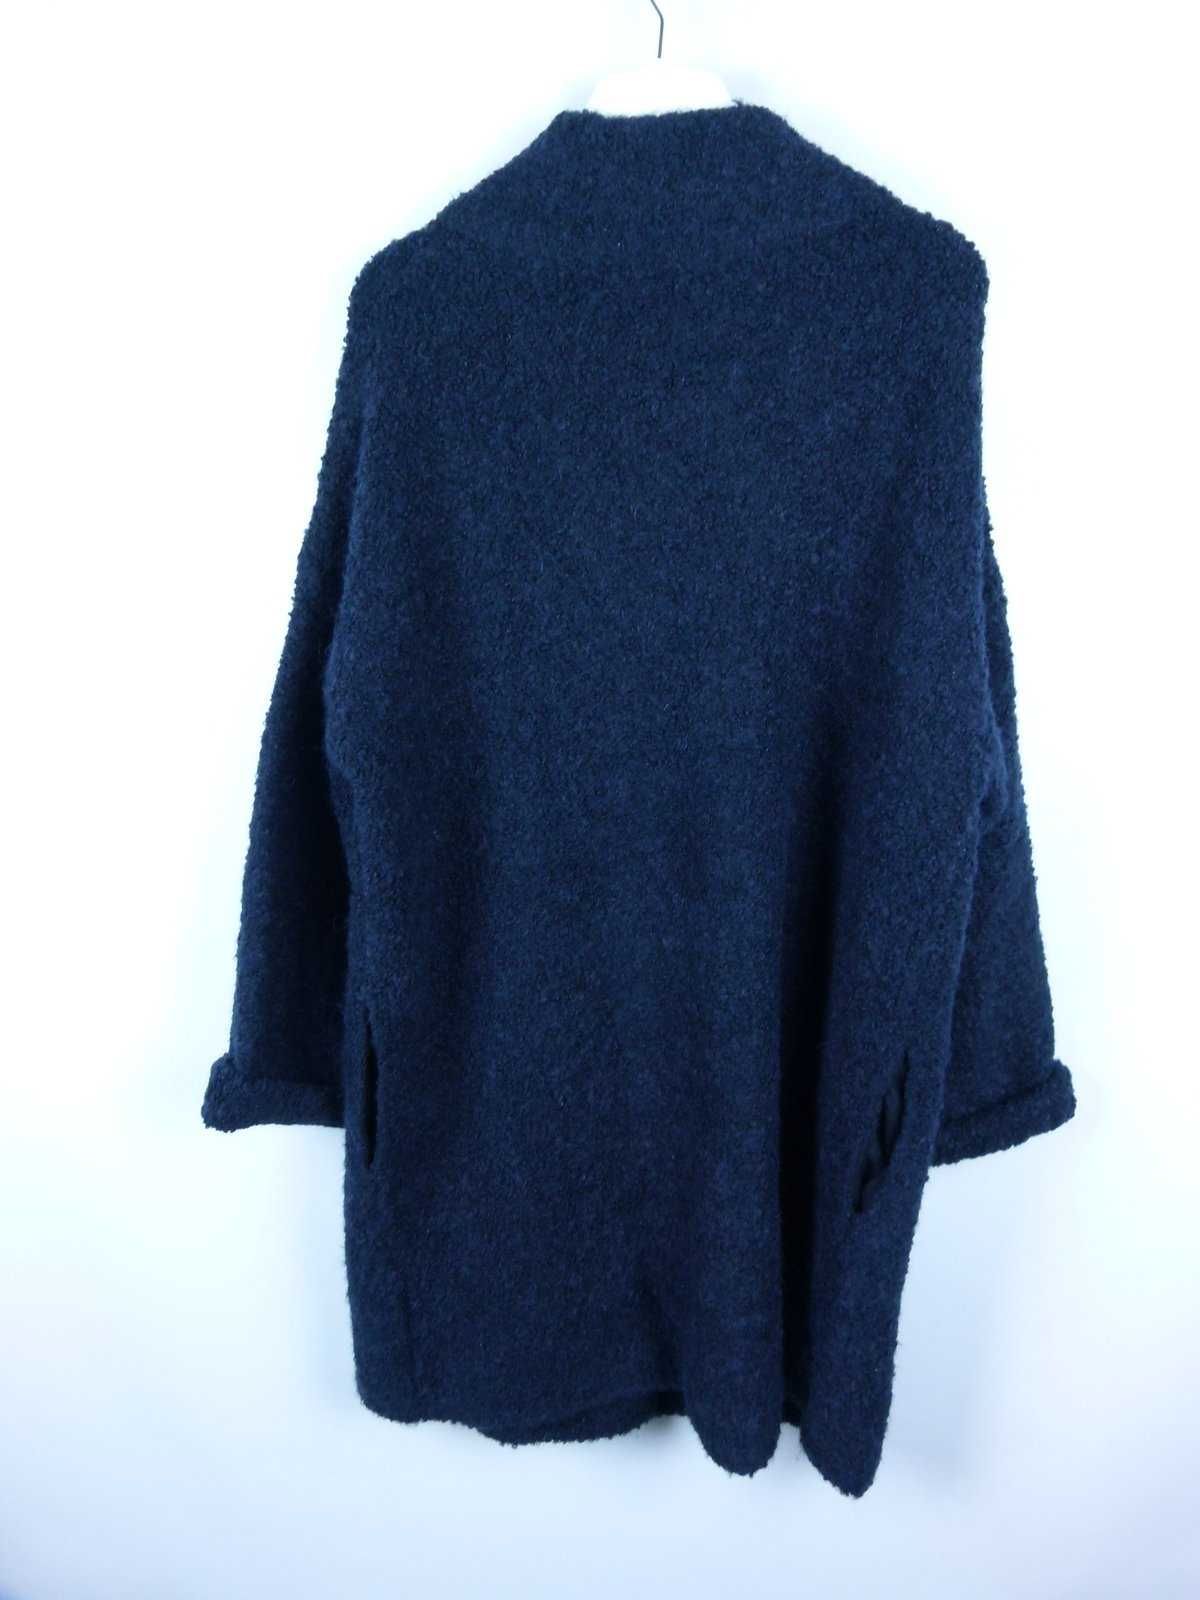 Phase Eight damski granatowy  sweter z alpaka wool 16 / 44